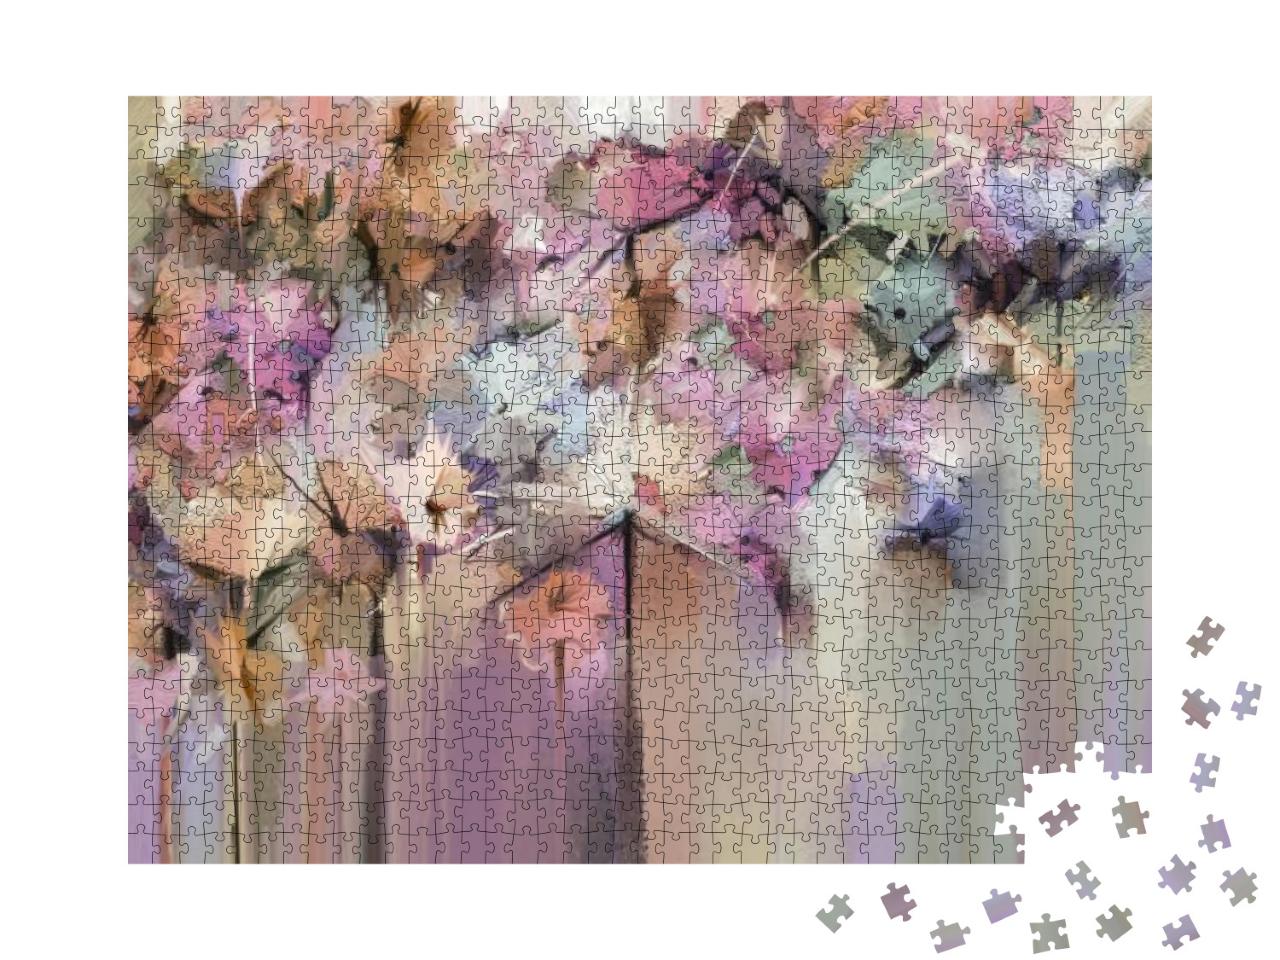 Puzzle 1000 Teile „Blumenbild in weichen Farben“